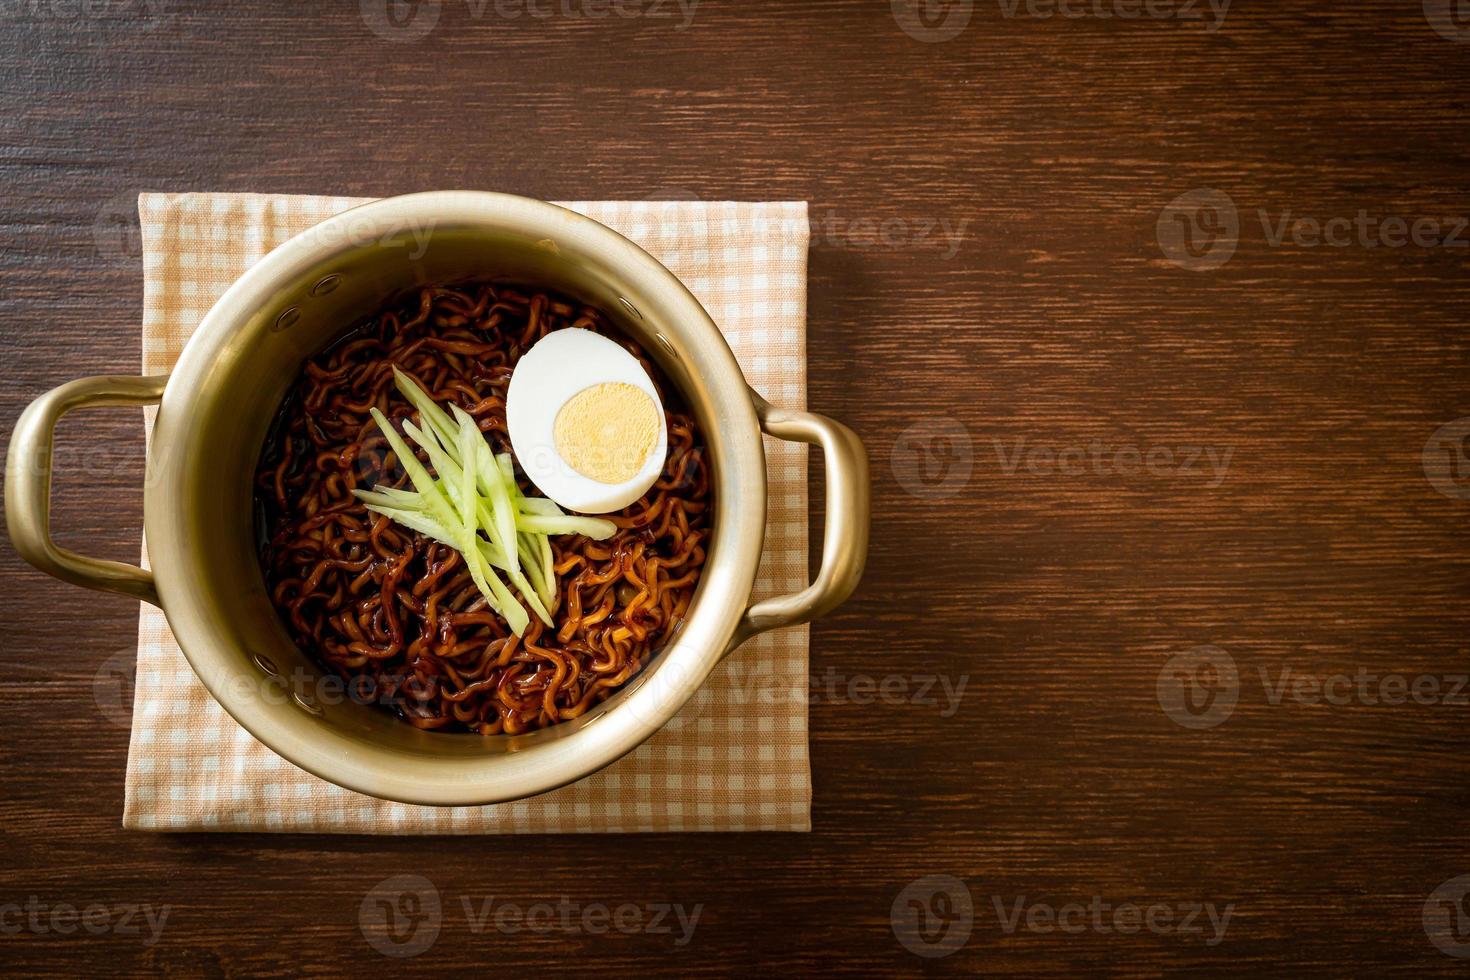 macarrão instantâneo coreano com molho de feijão preto foto